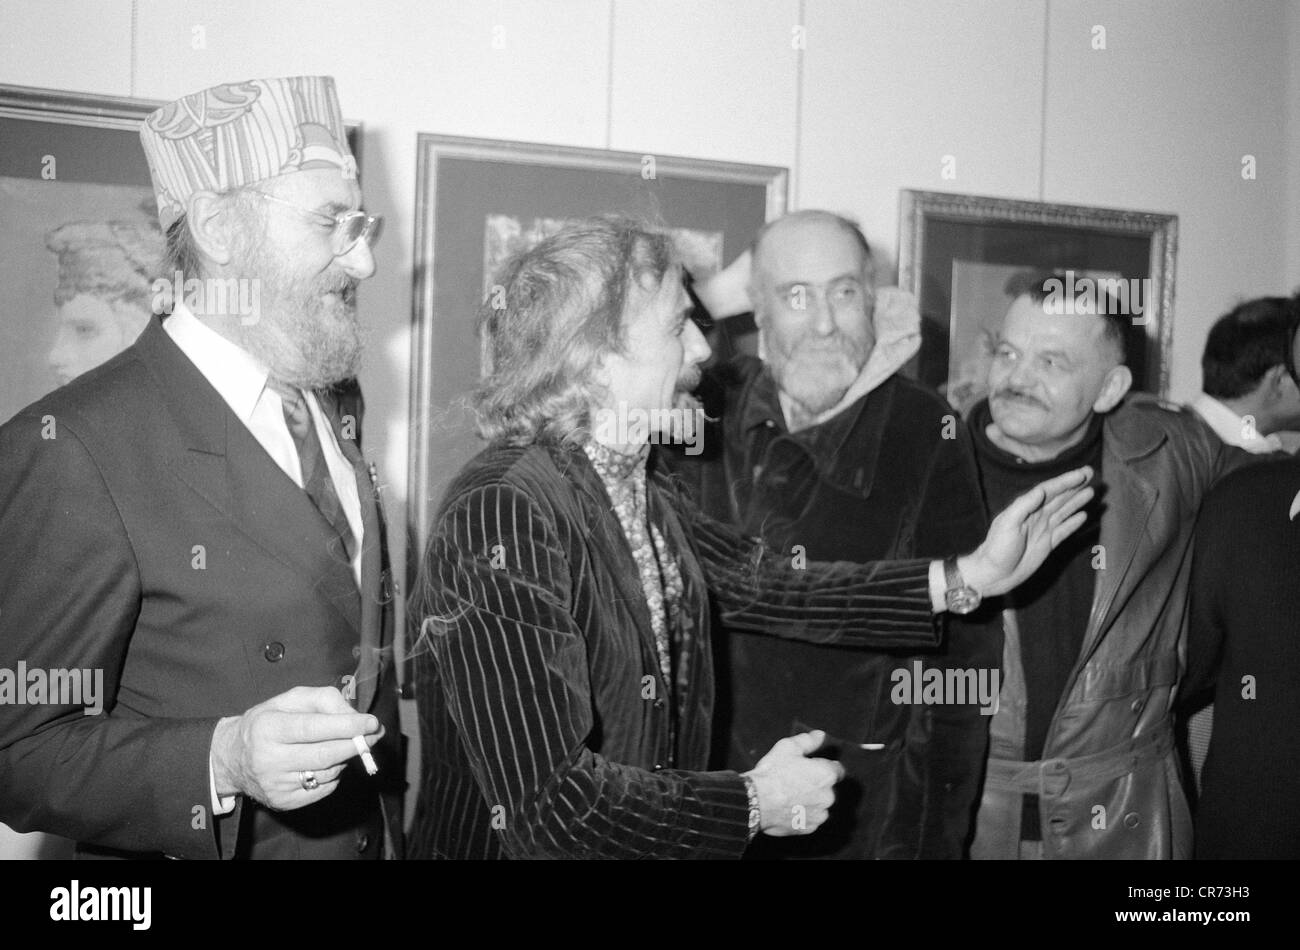 Hundertwasser, Friedensreich, 15.12.1928 - 19.2.2000, artiste autrichien (peintre), mi-longueur, avec Ernst Fuchs, Arik Brauer, Alfred Hrdlicka, dans le salon de télévision allemand 'Heute abend', 29.9.1988, Banque D'Images